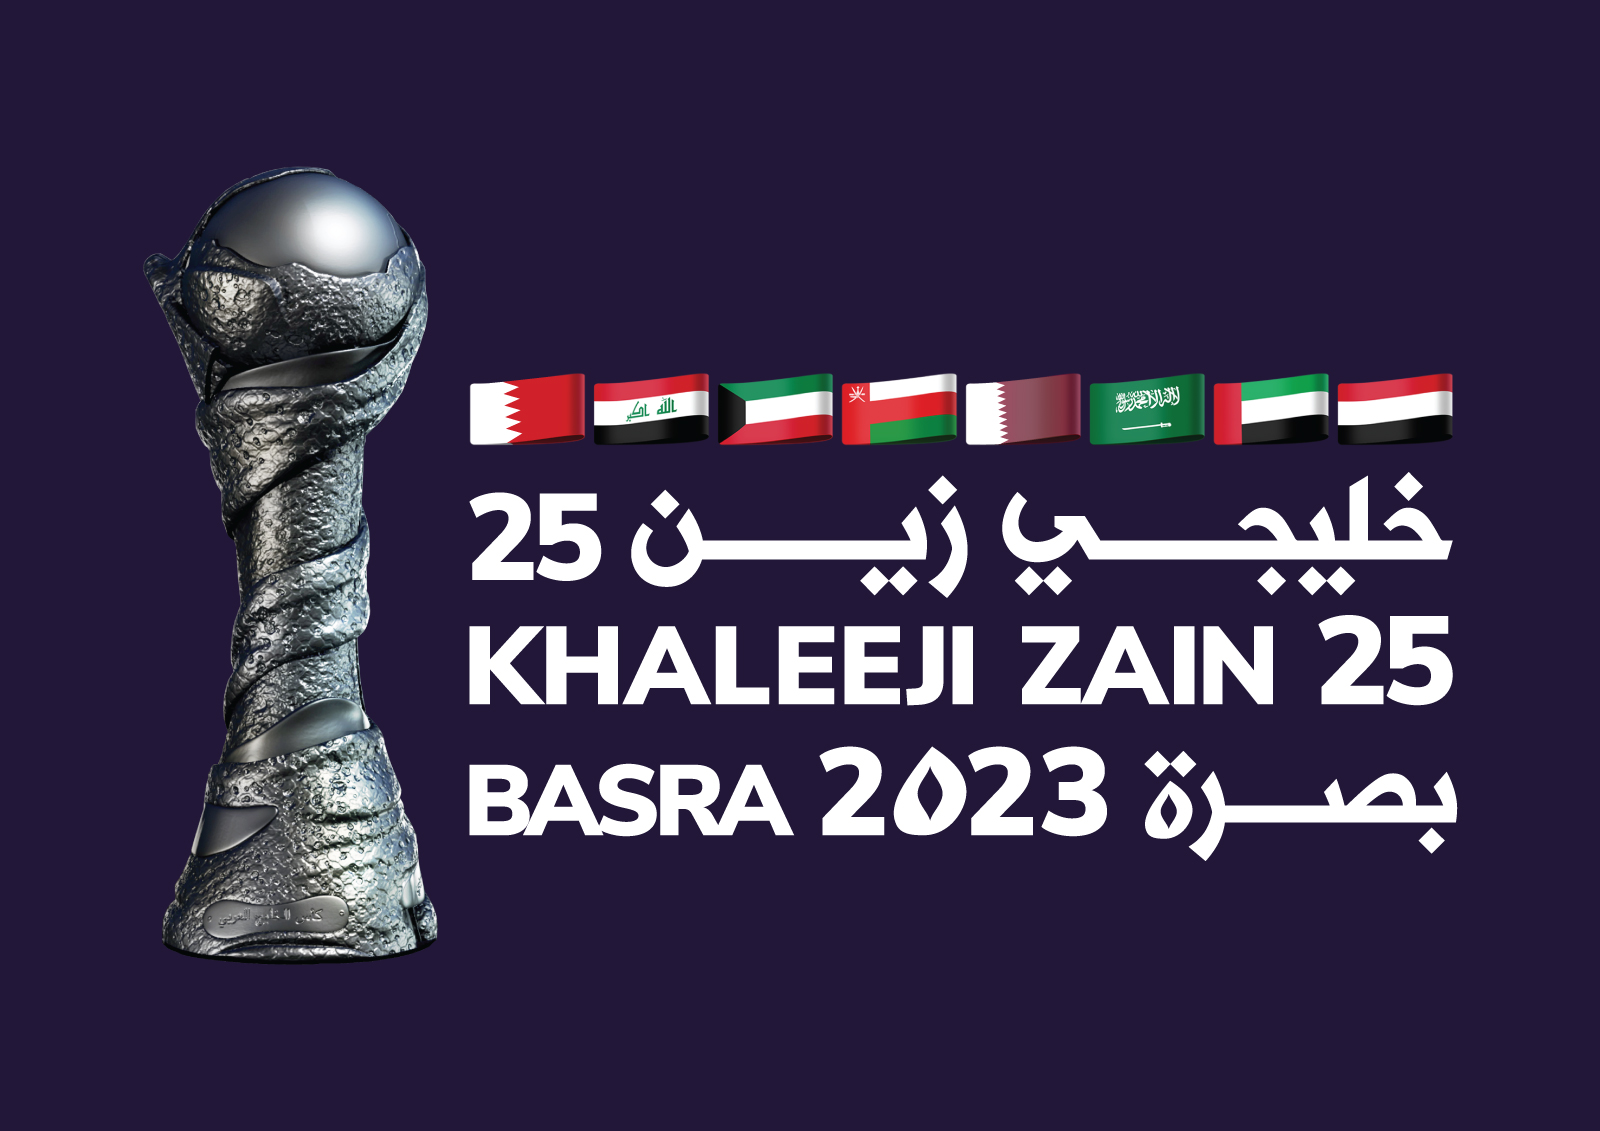 بطولة كأس الخليج العربي تحتفل بيوبيلها الفضي في البصرة